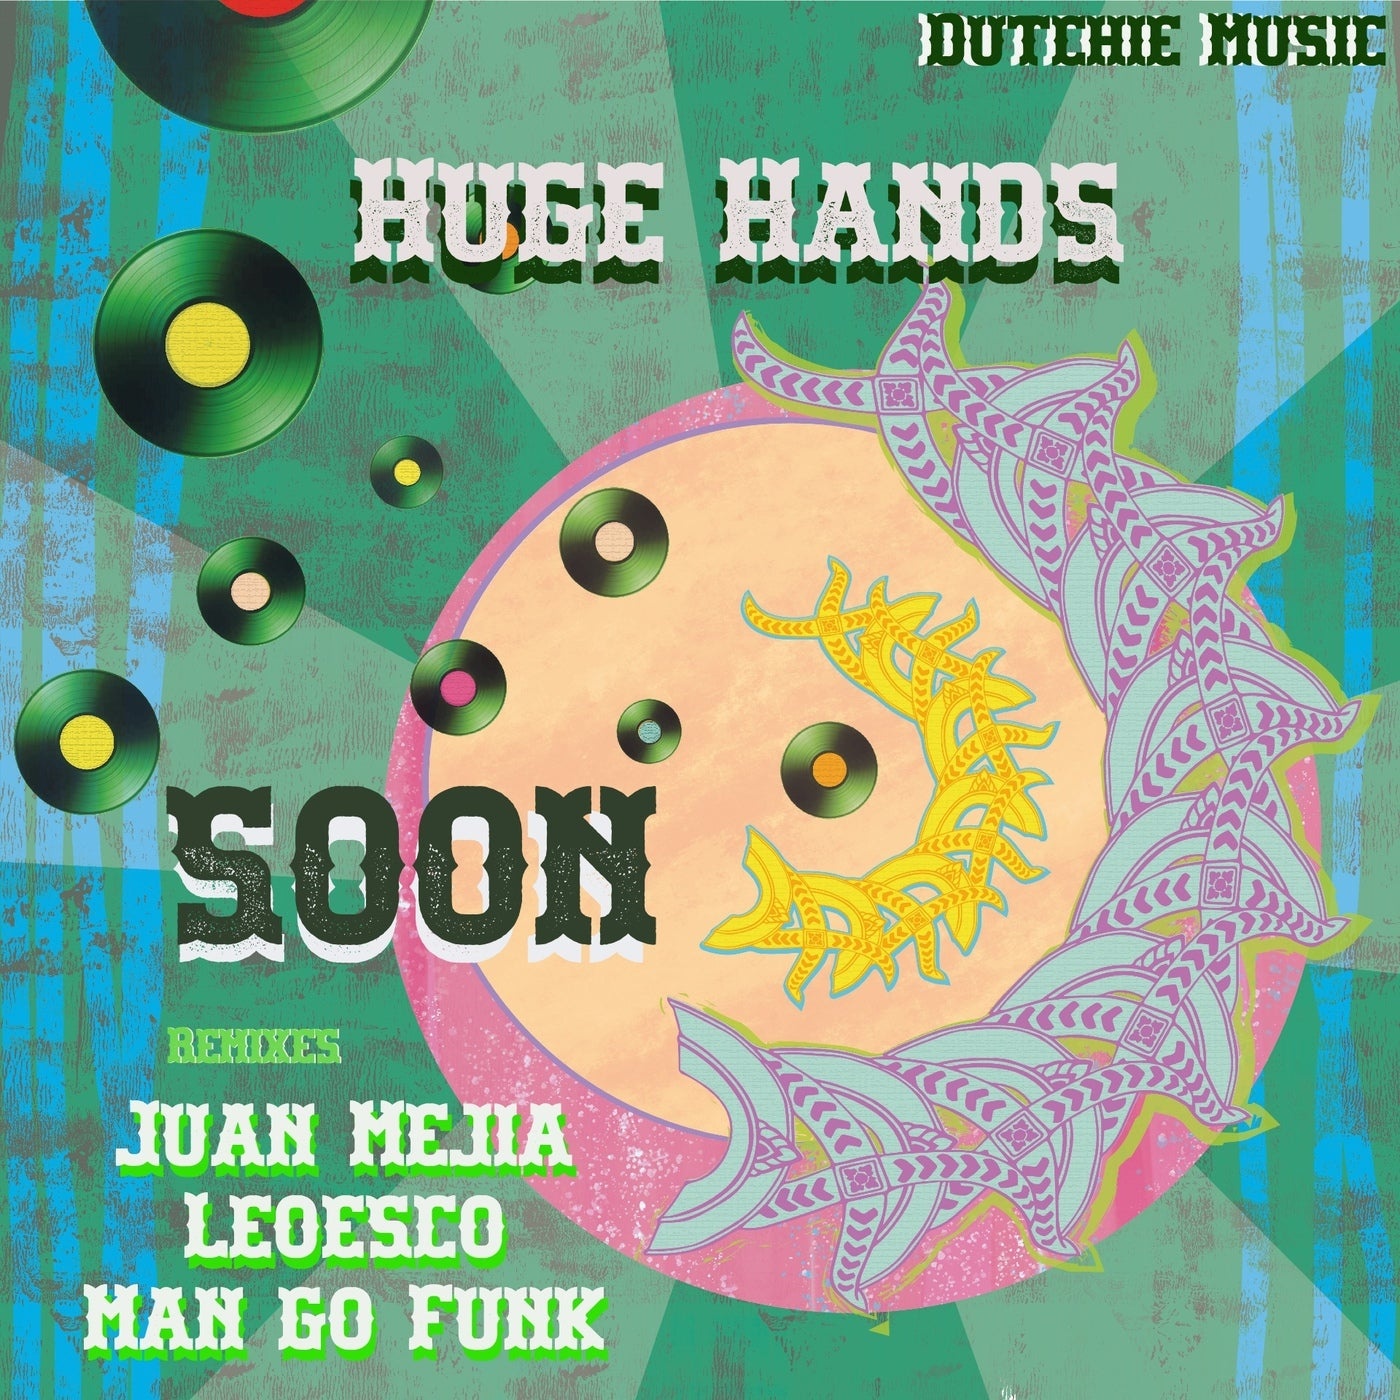 Huge Hands - SOON EP [DUTCHIE352]